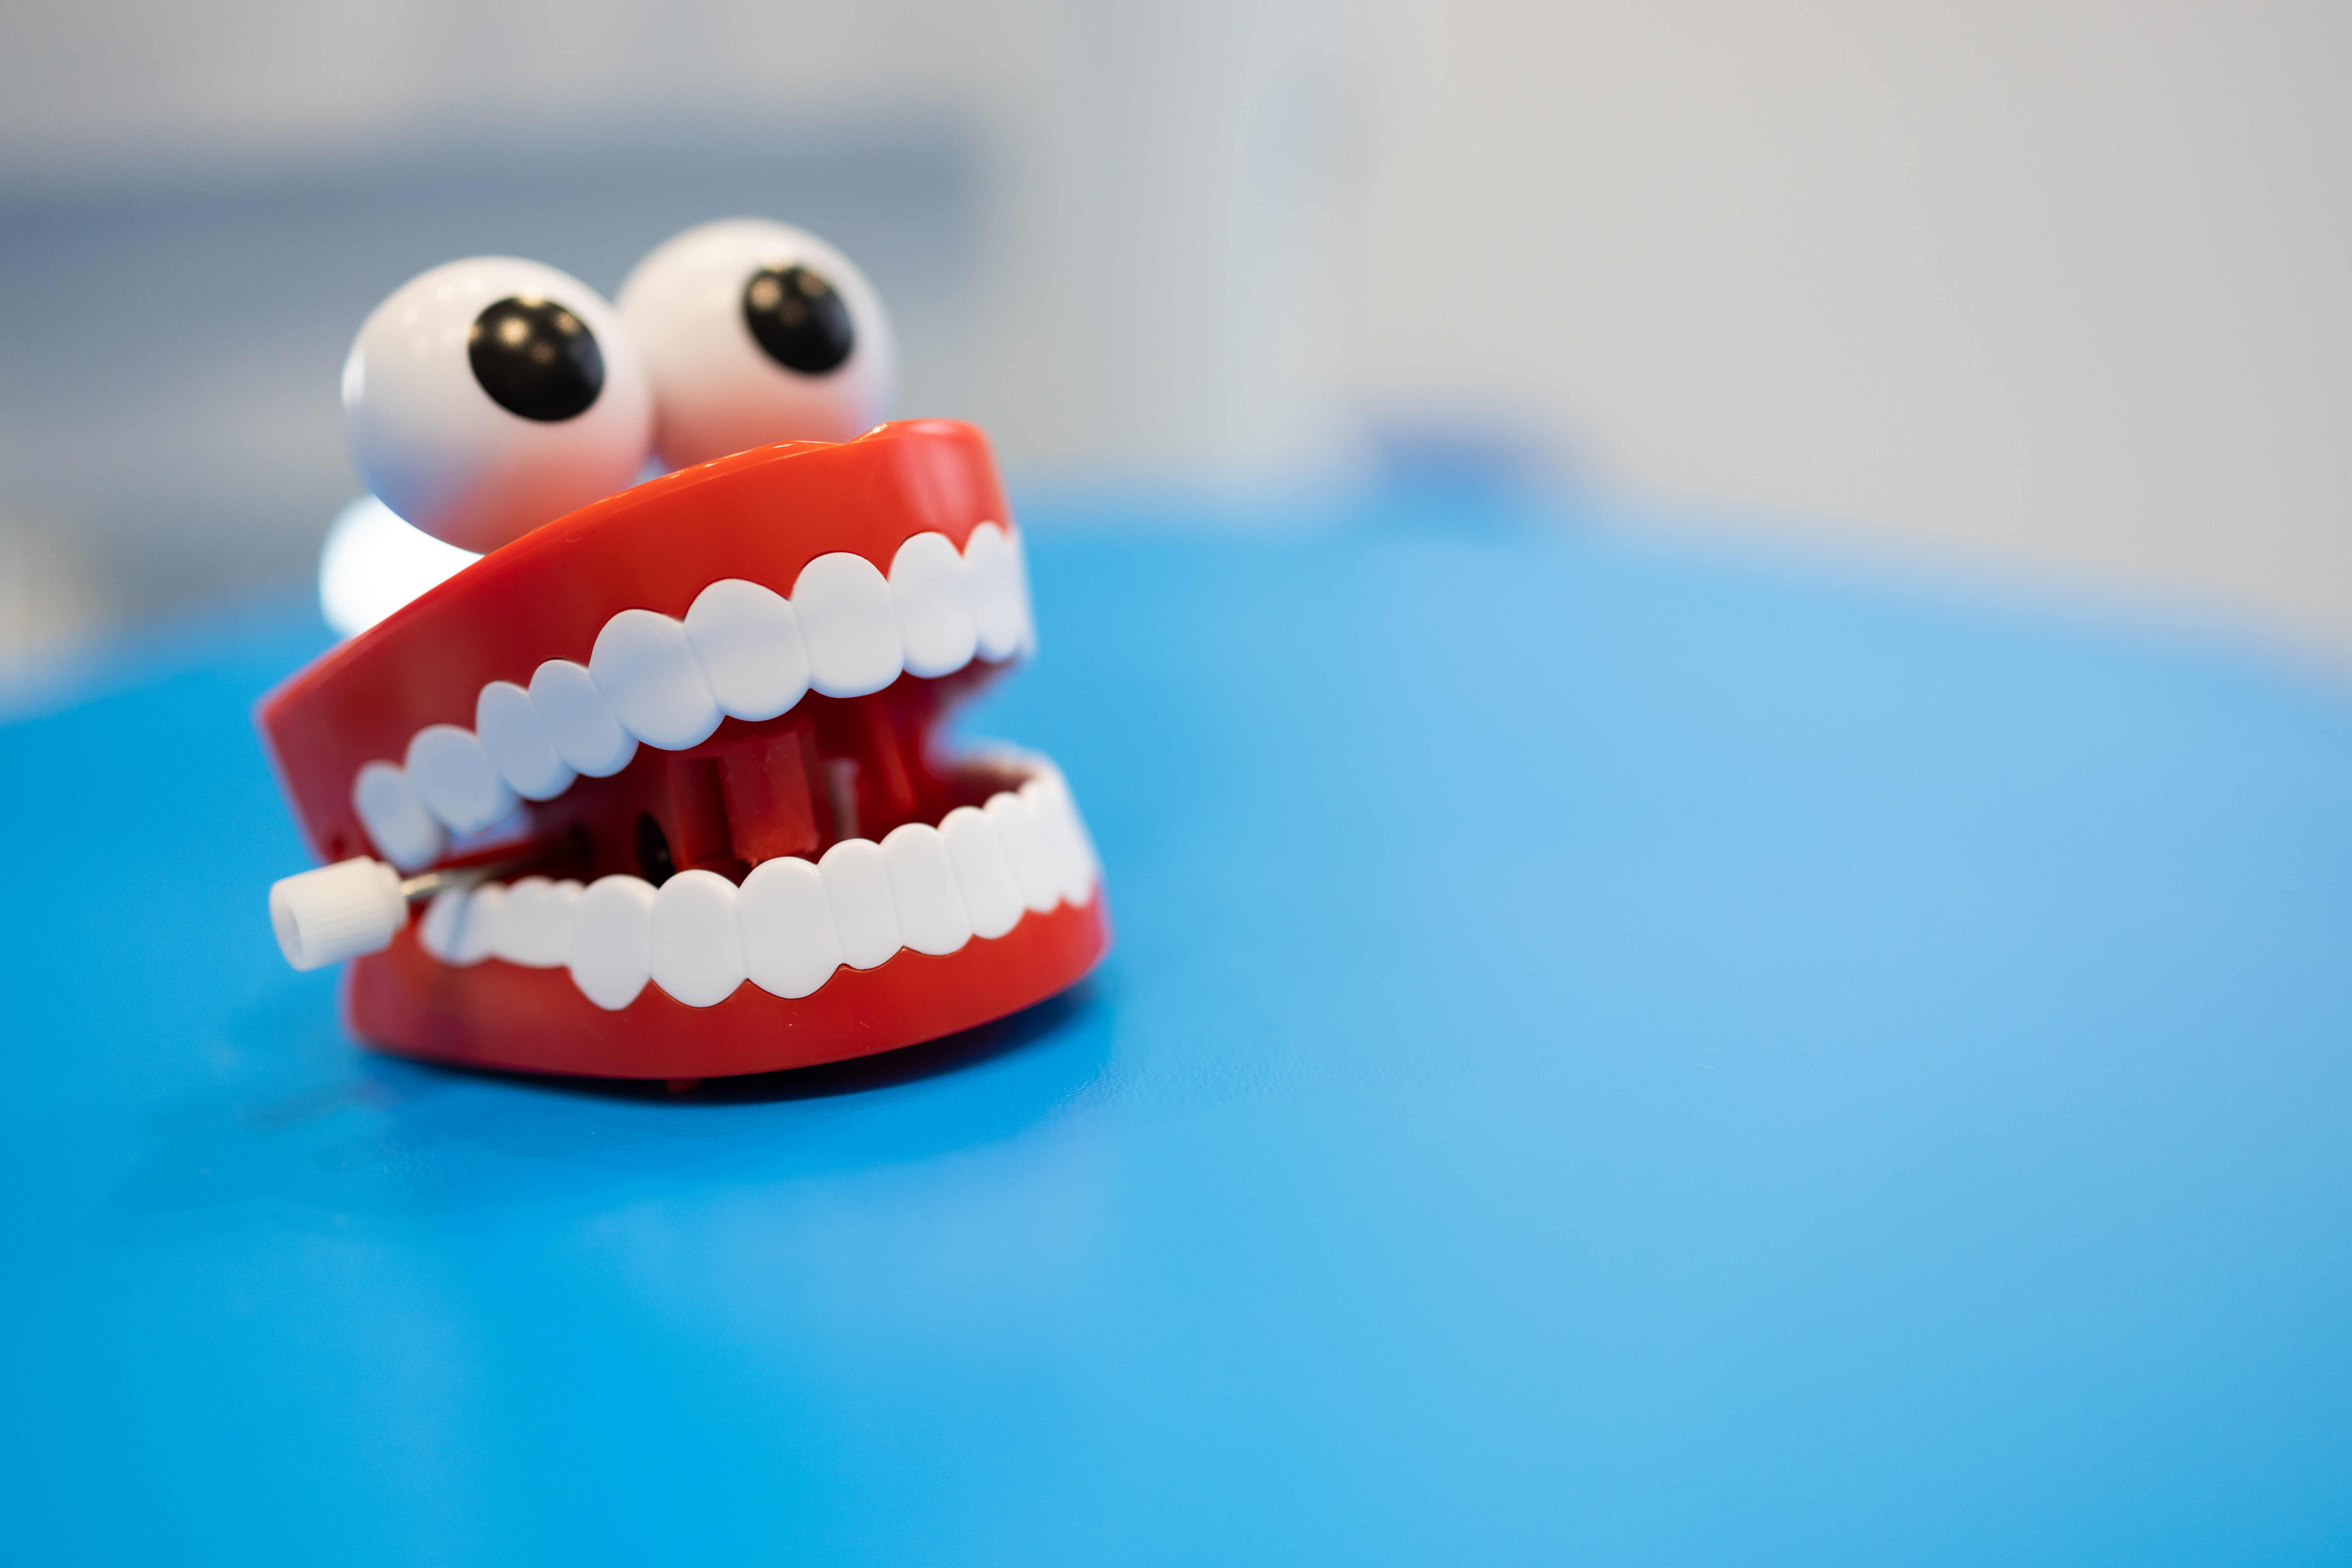 Dente mobile: cause, rischi e rimedi per salvaguardare la dentatura